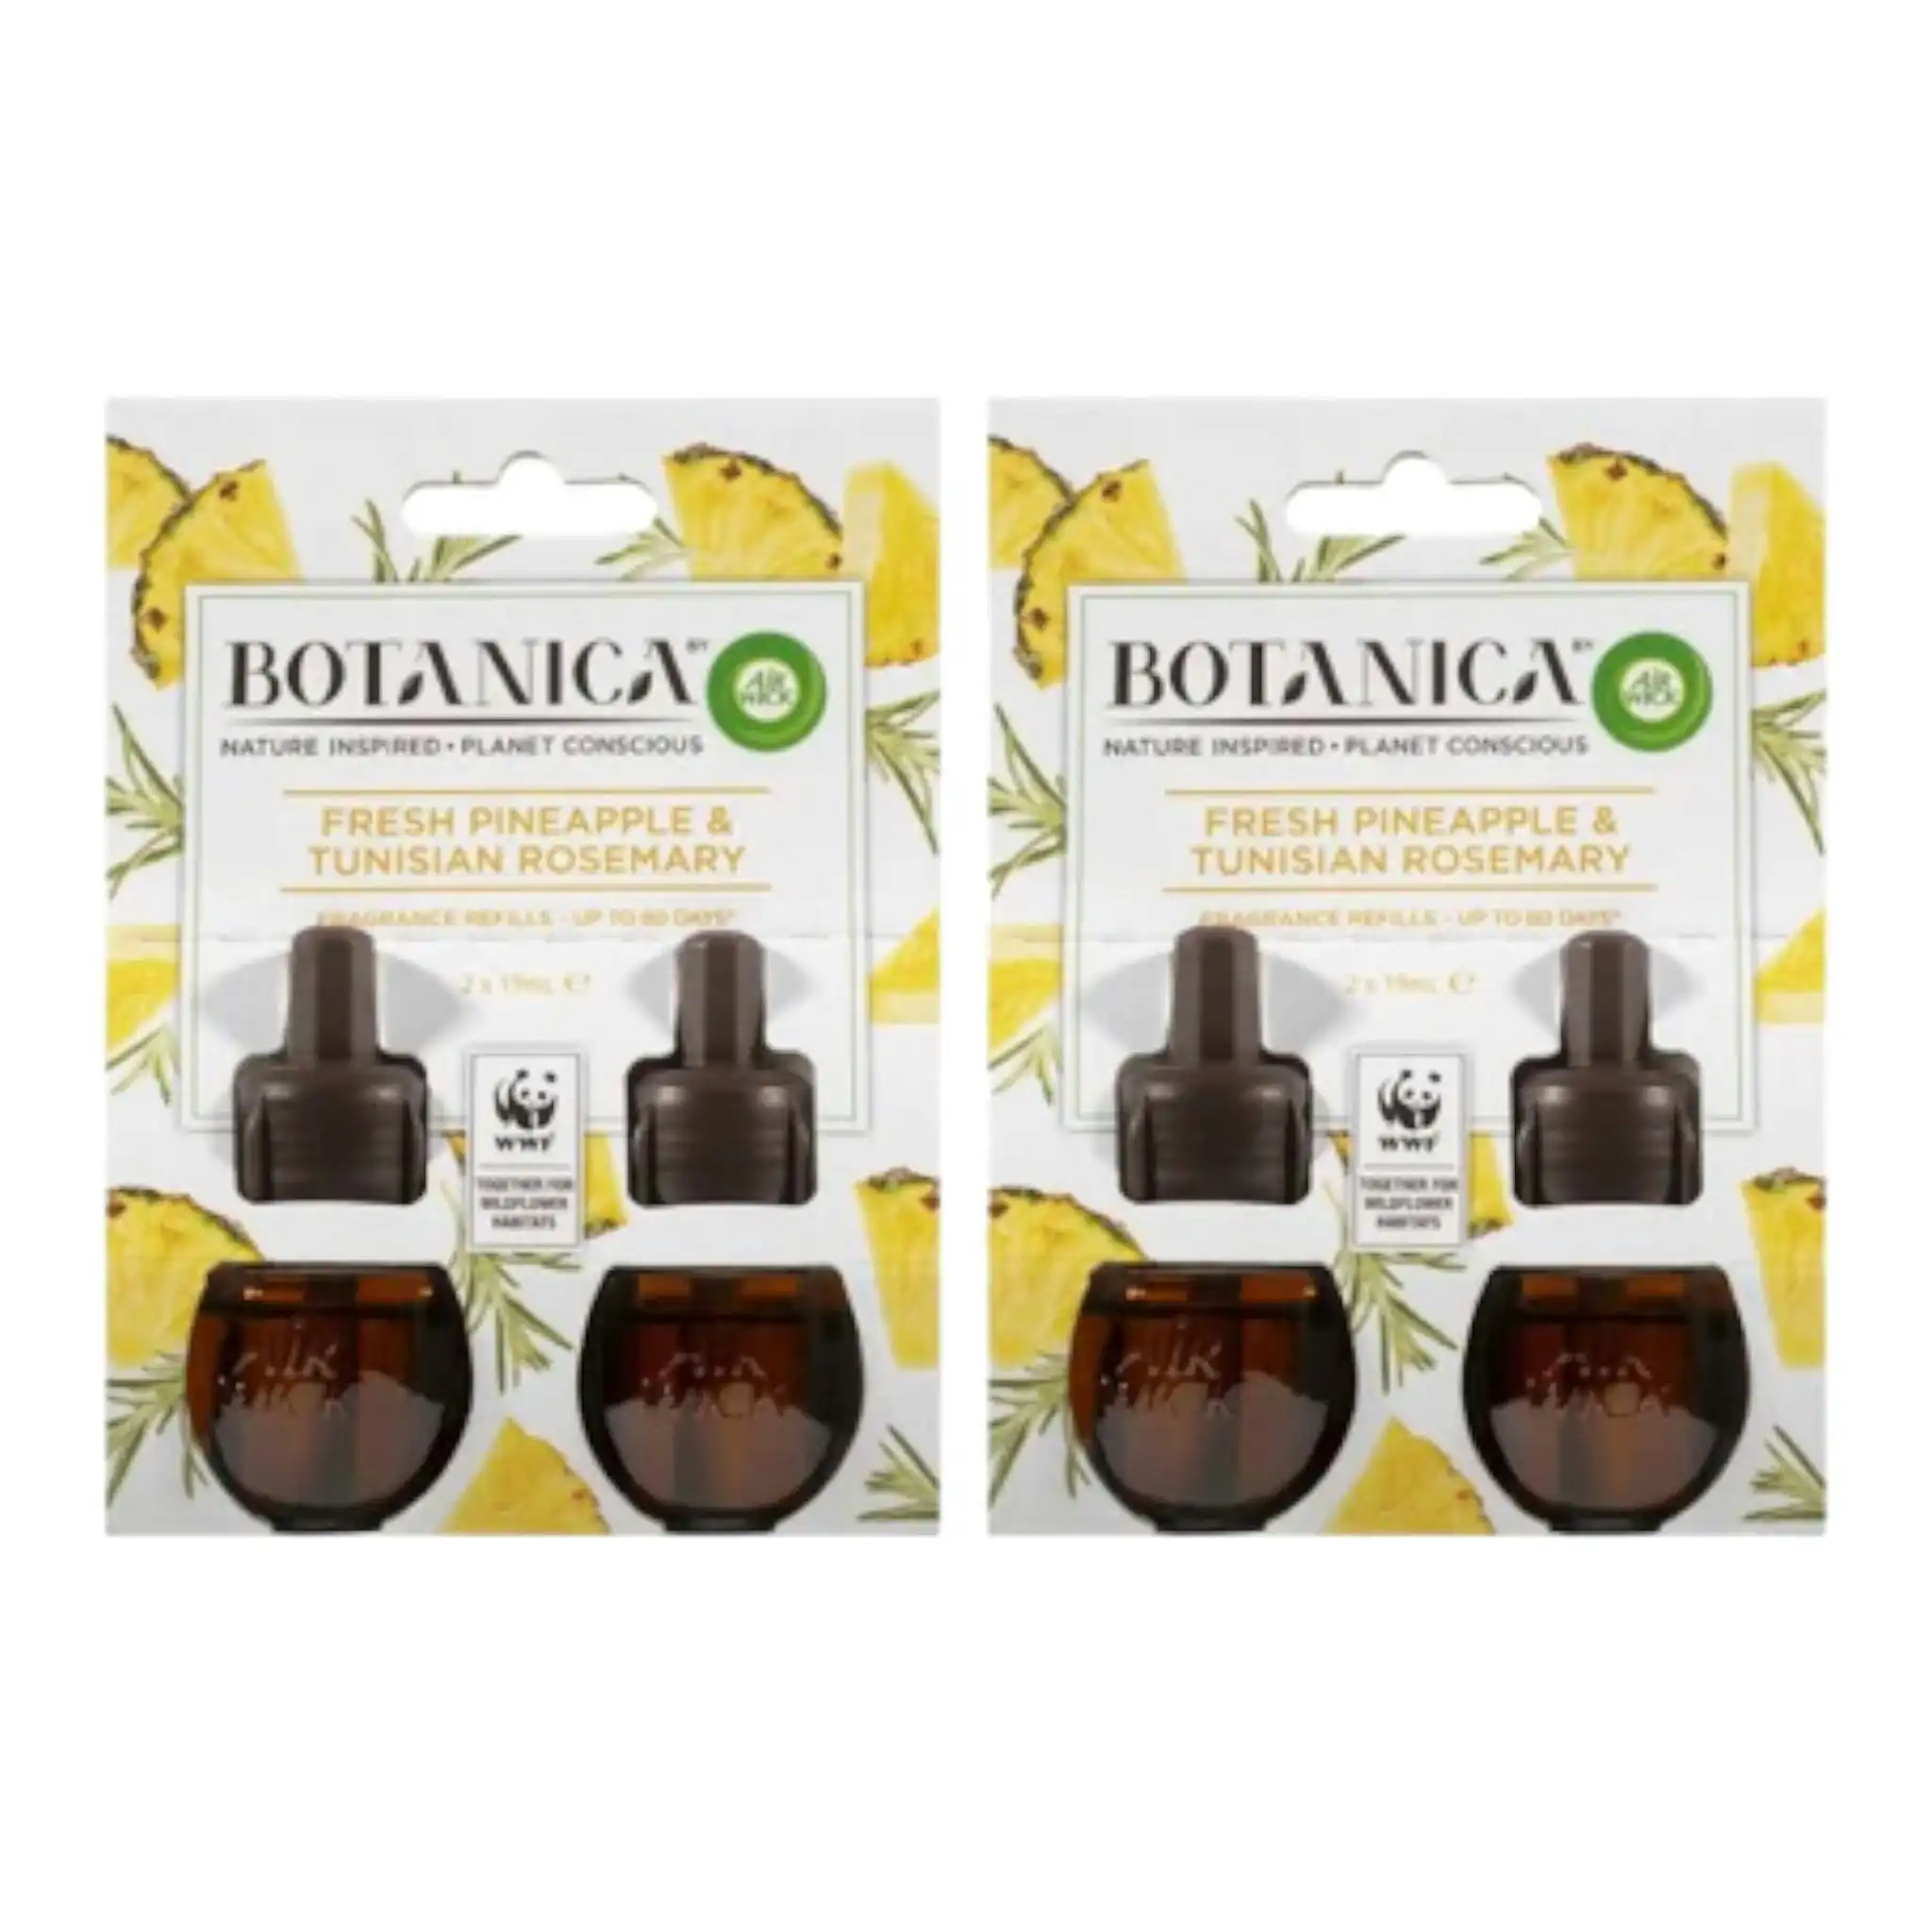 Botanica Fresh Pineapple & Tunisian Rosemary Fragrance Refills